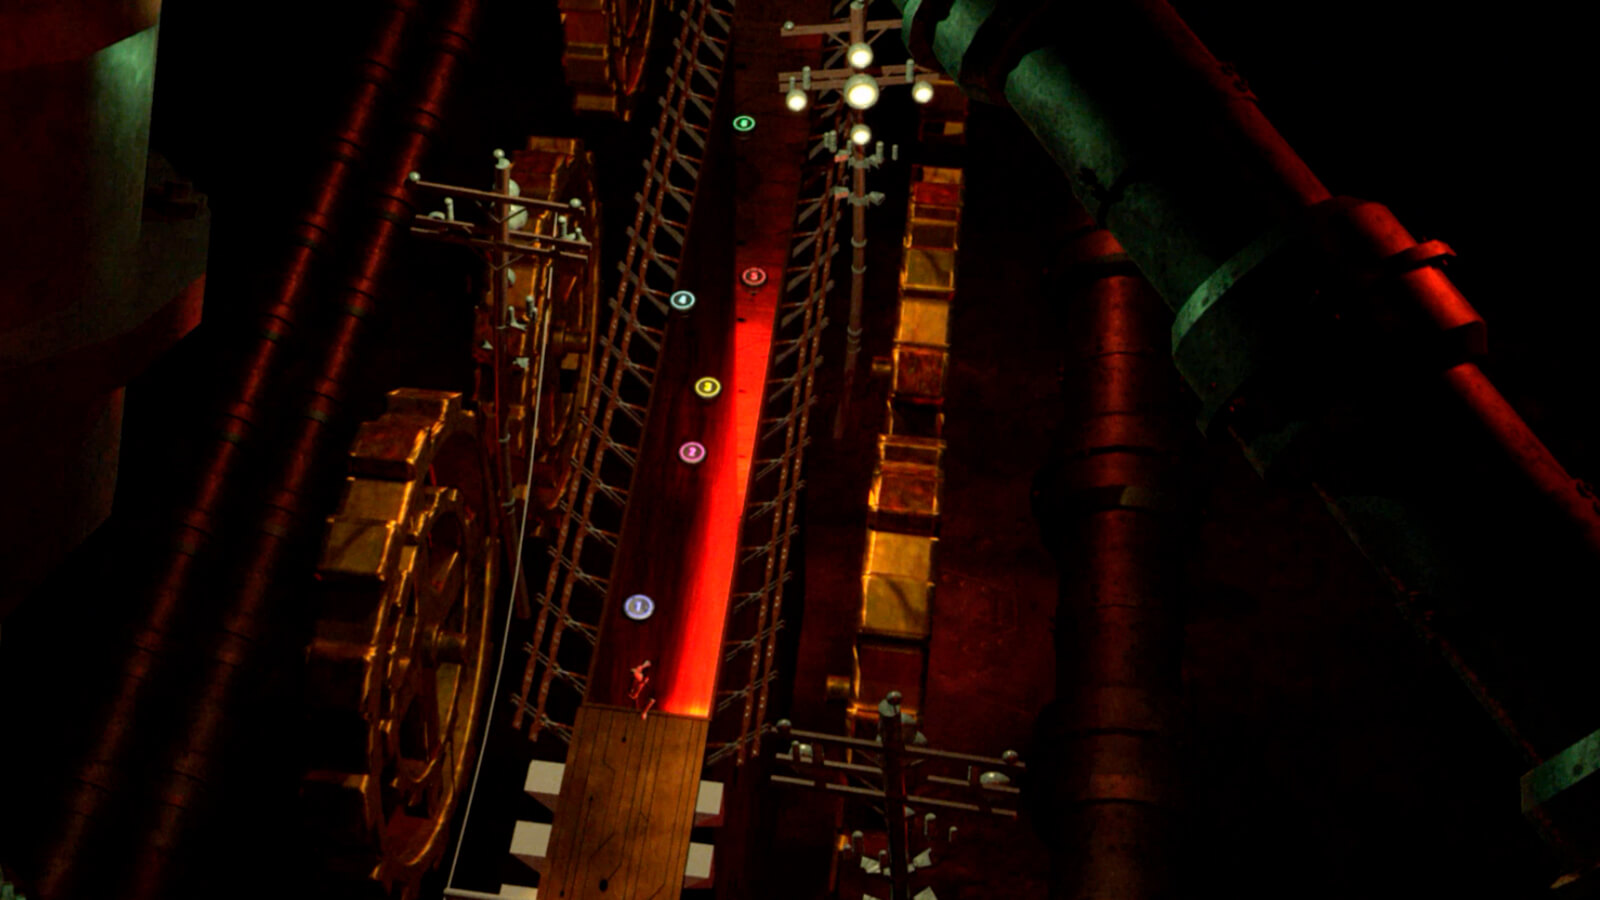 Un corredor industrial iluminado en rojo rodeado de engranajes y postes telefónicos visto desde arriba.